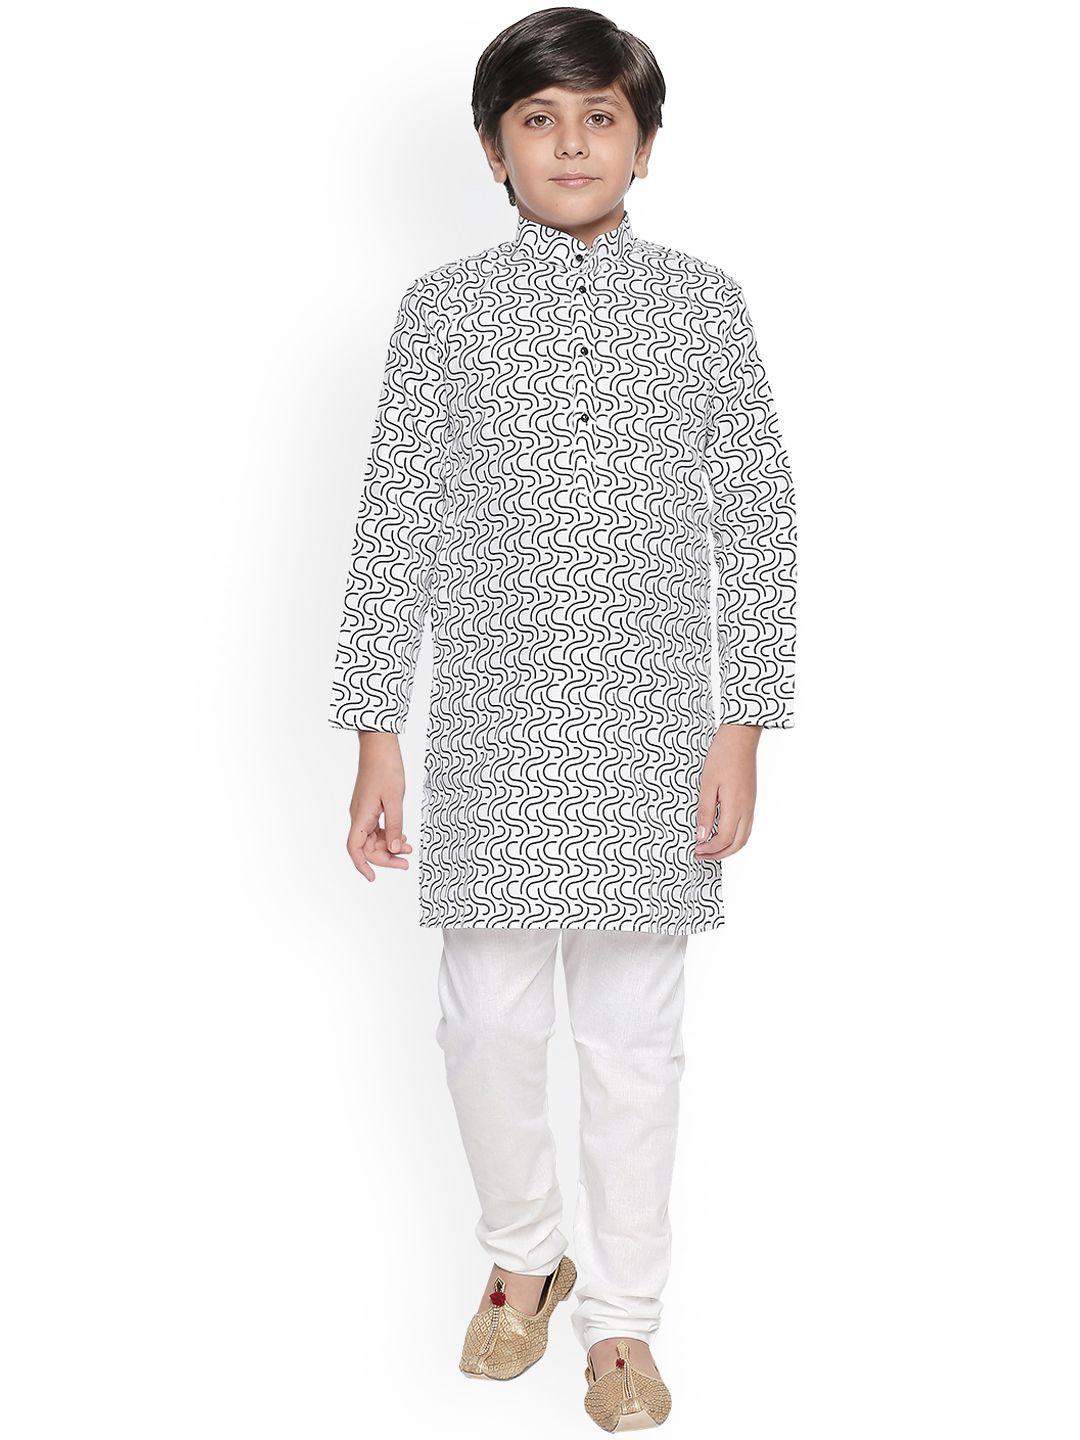 jeetethnics boys white & black printed kurta with pyjamas